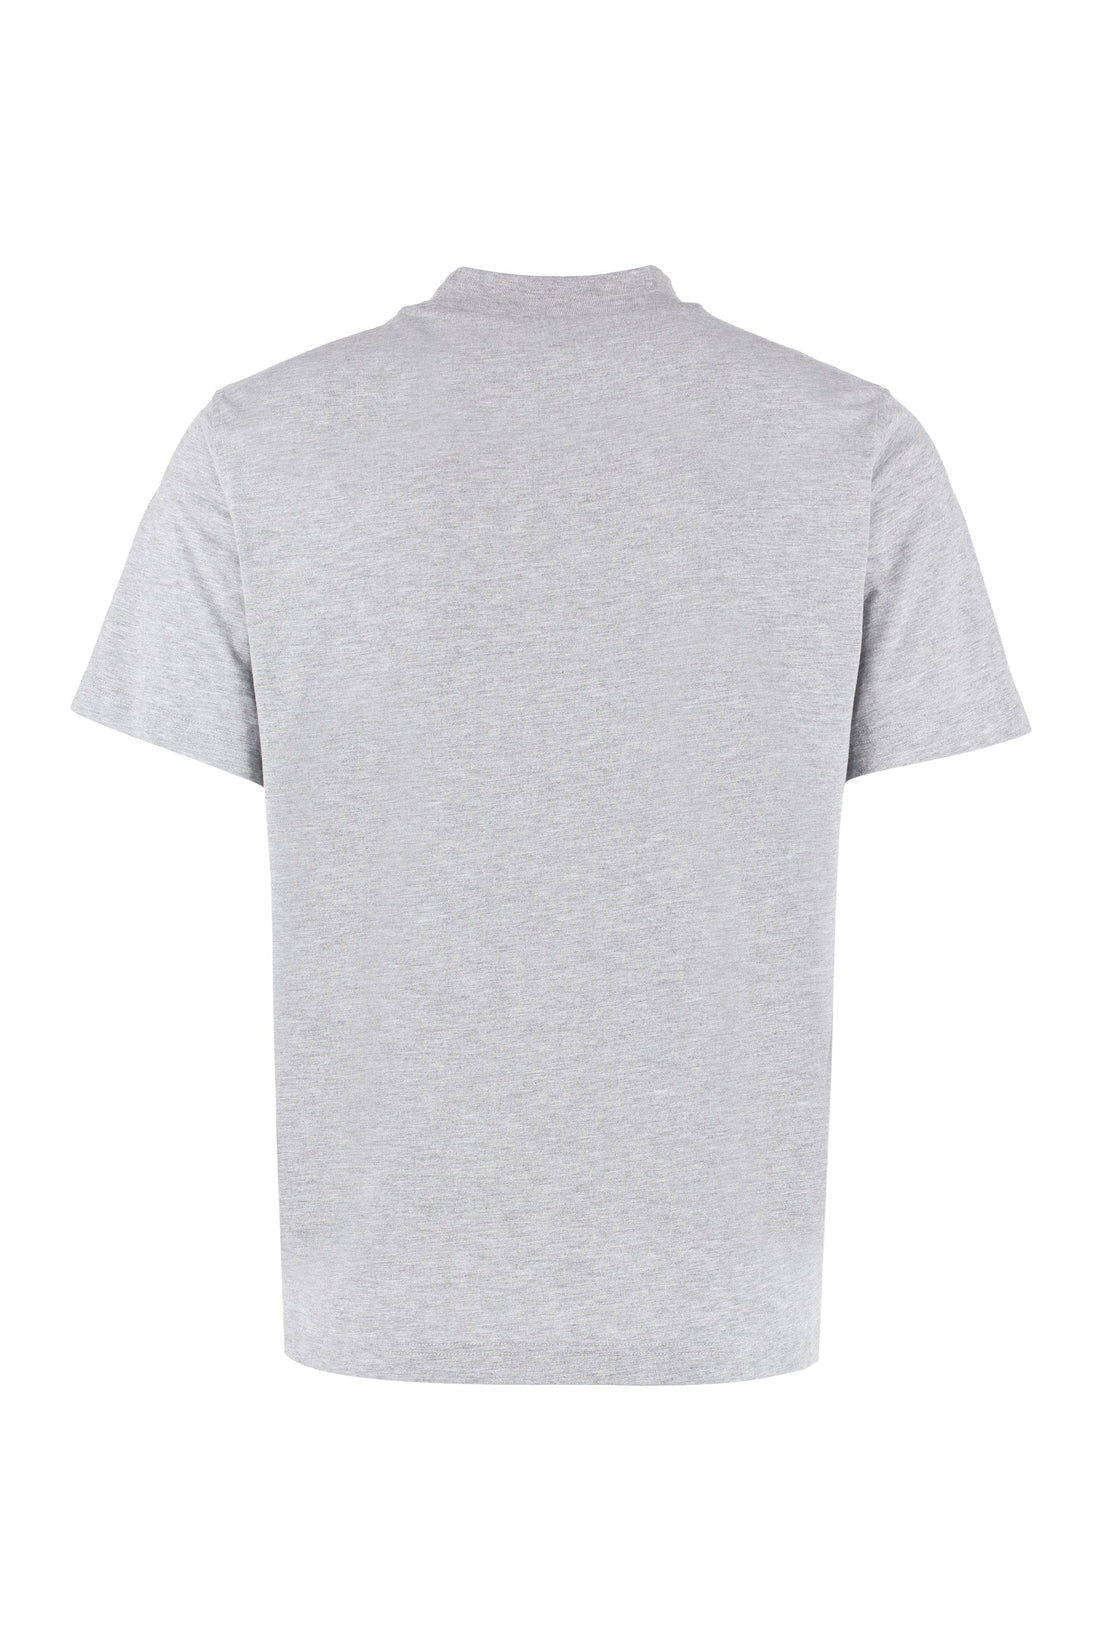 HYDROGEN-OUTLET-SALE-Logo print t-shirt-ARCHIVIST